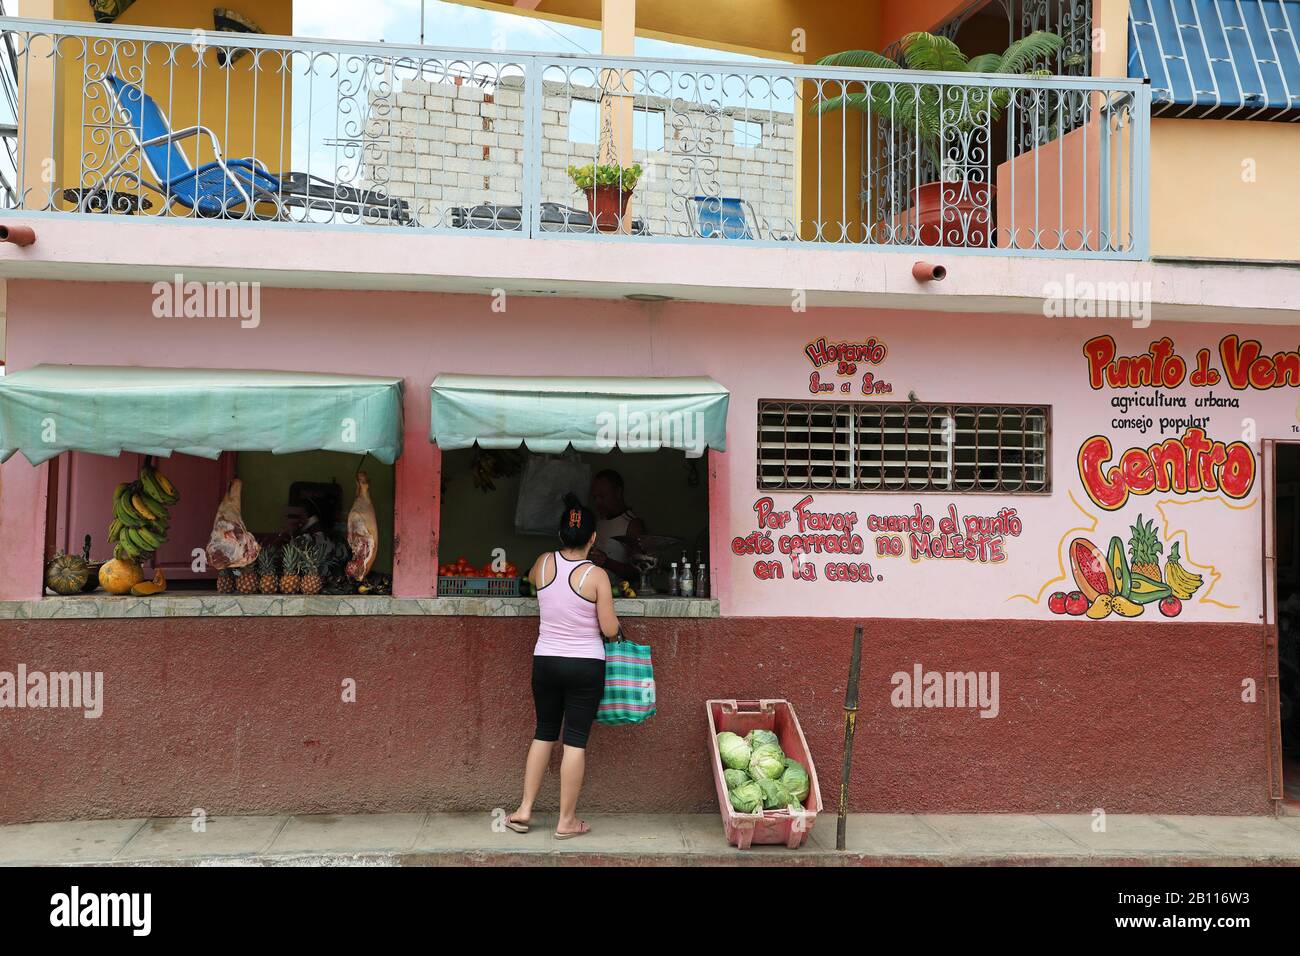 Negozio di frutta e verdura, Cuba, Trinidad Foto Stock